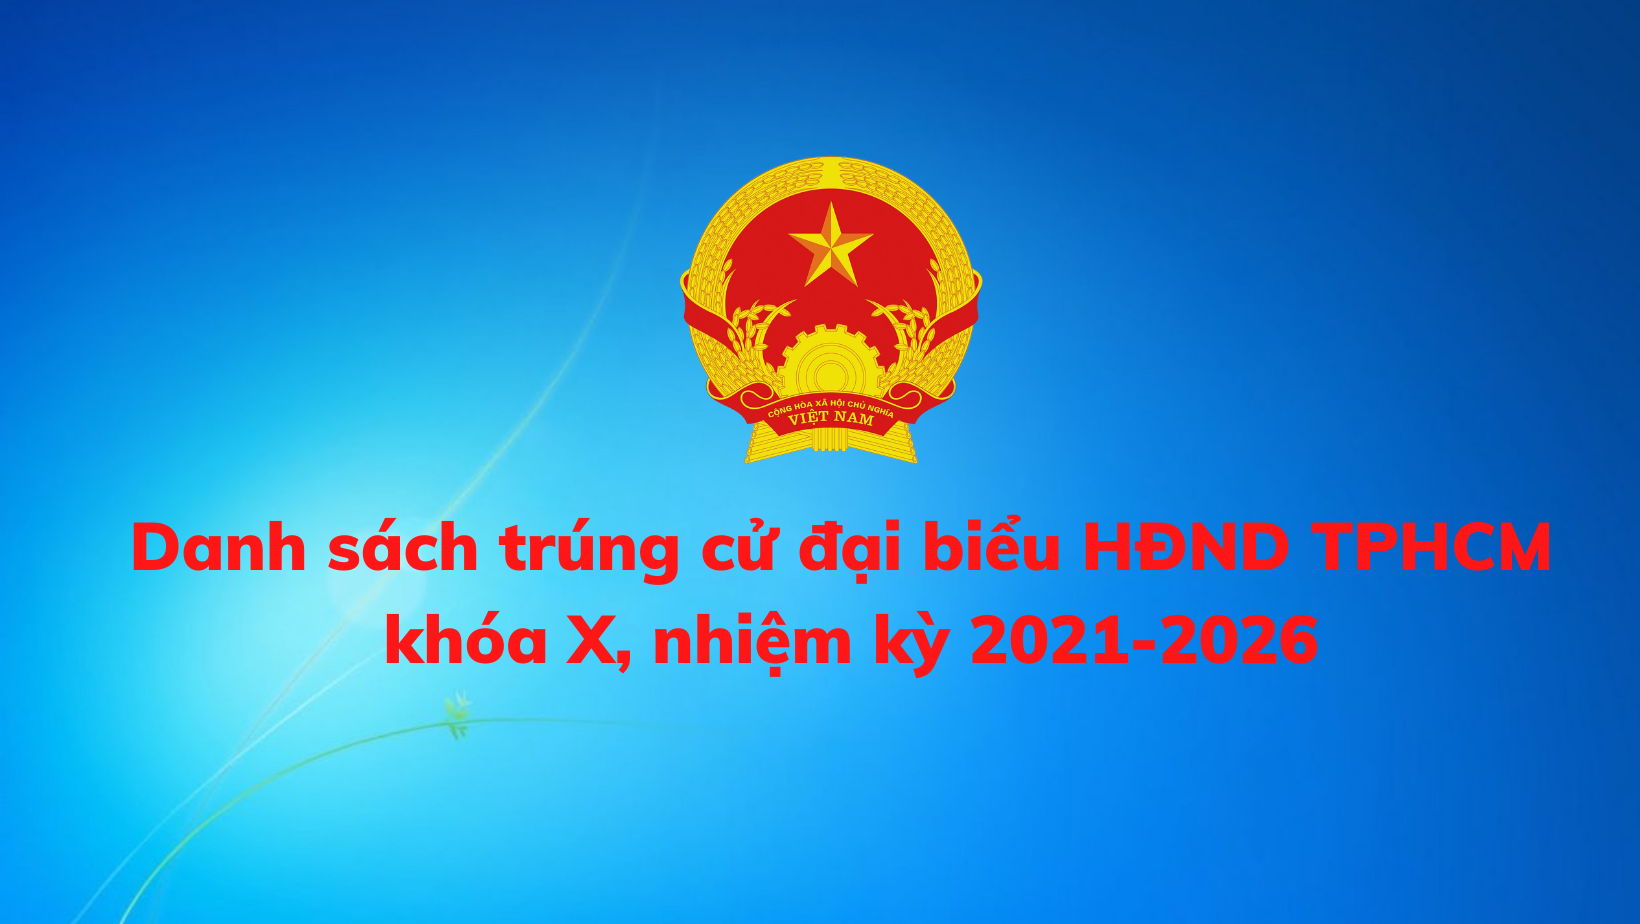 Danh sách 94 người trúng cử đại biểu HĐND Thành phố Hồ Chí Minh, nhiệm kỳ 2021-2026.